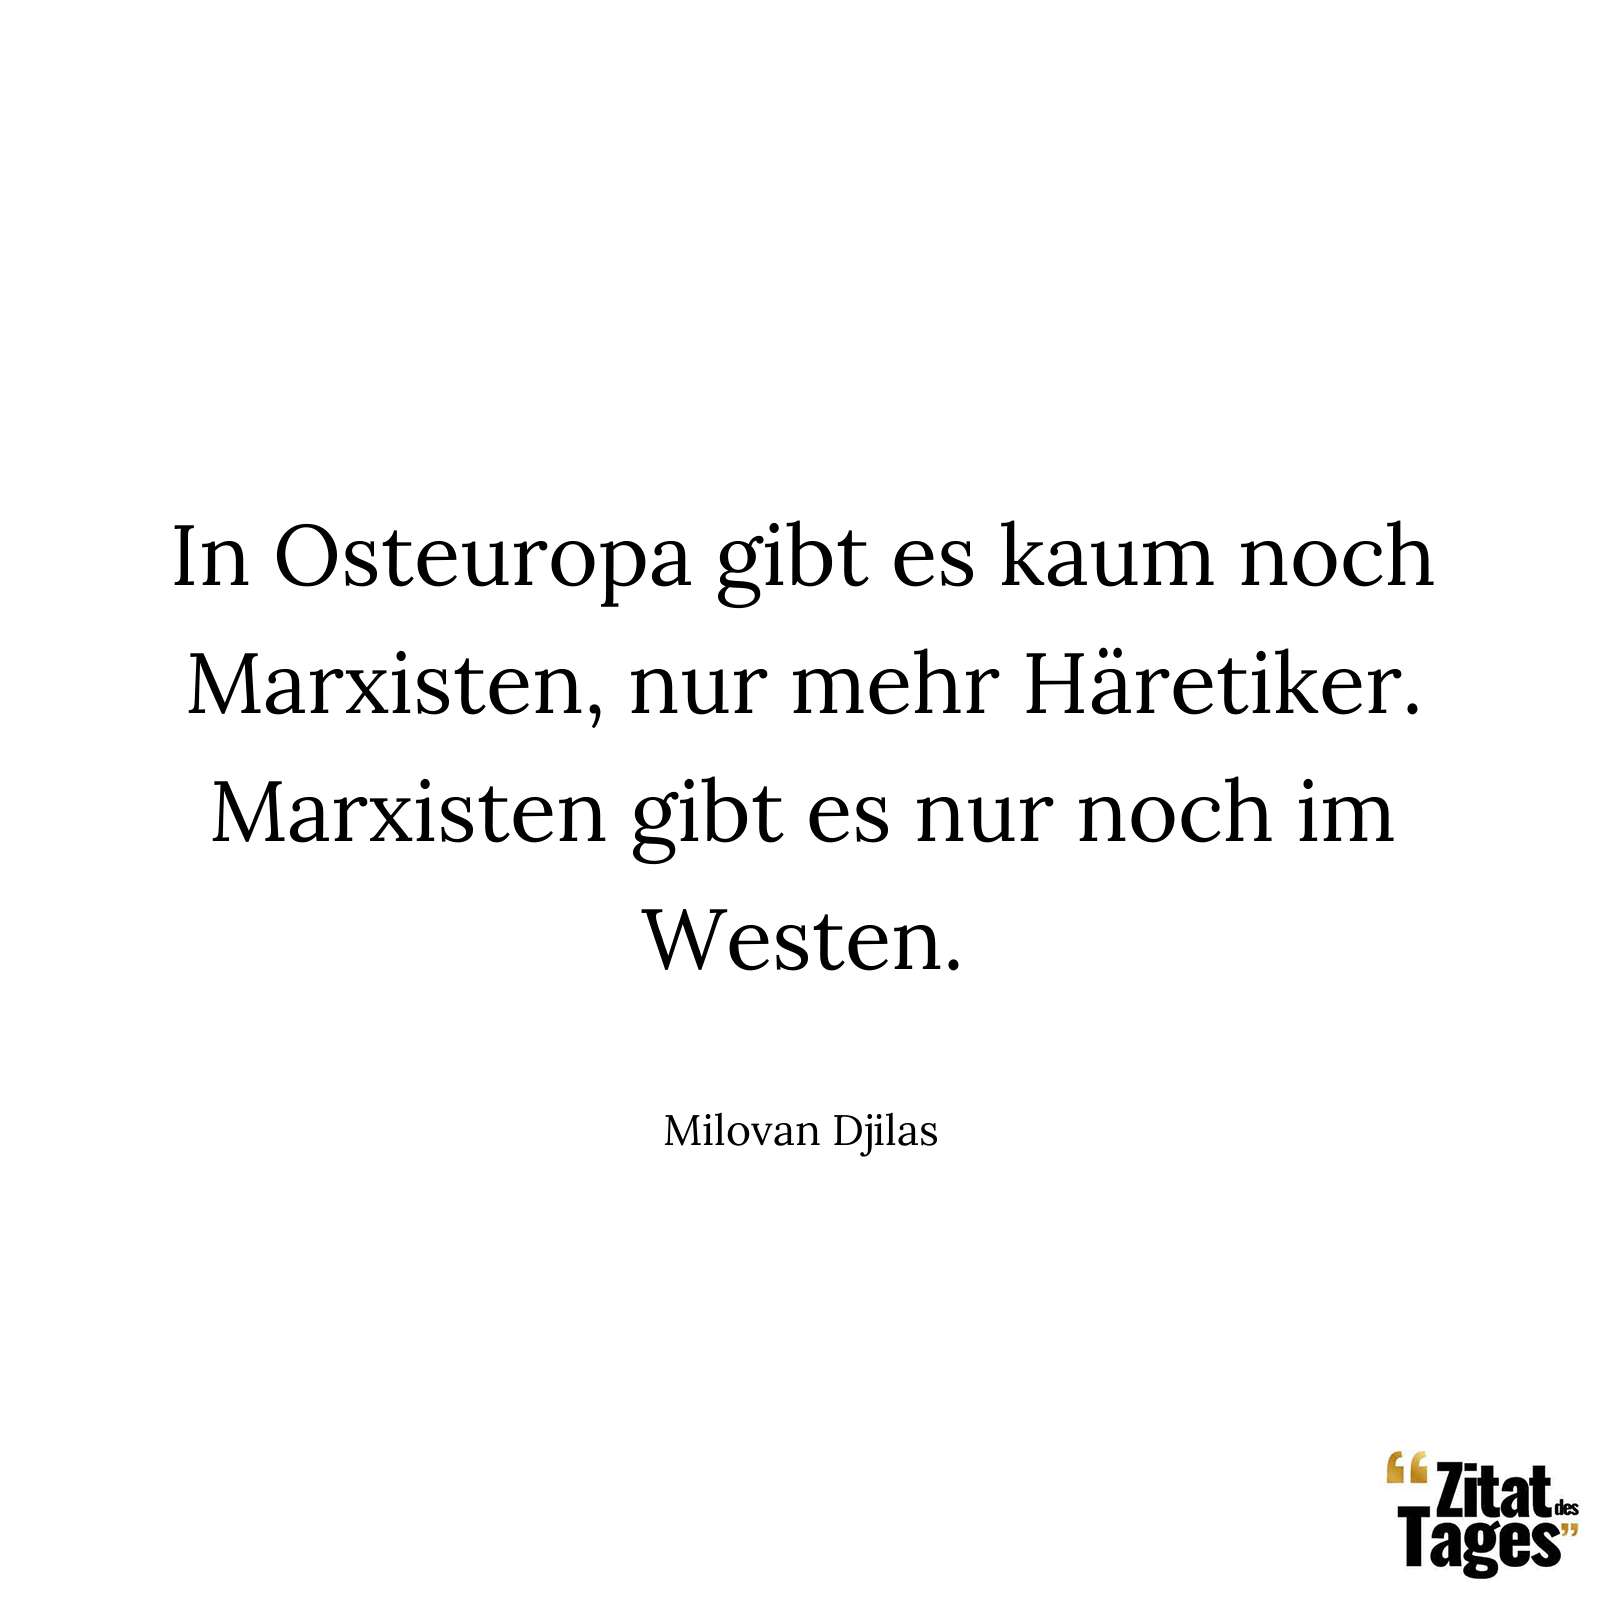 In Osteuropa gibt es kaum noch Marxisten, nur mehr Häretiker. Marxisten gibt es nur noch im Westen. - Milovan Djilas